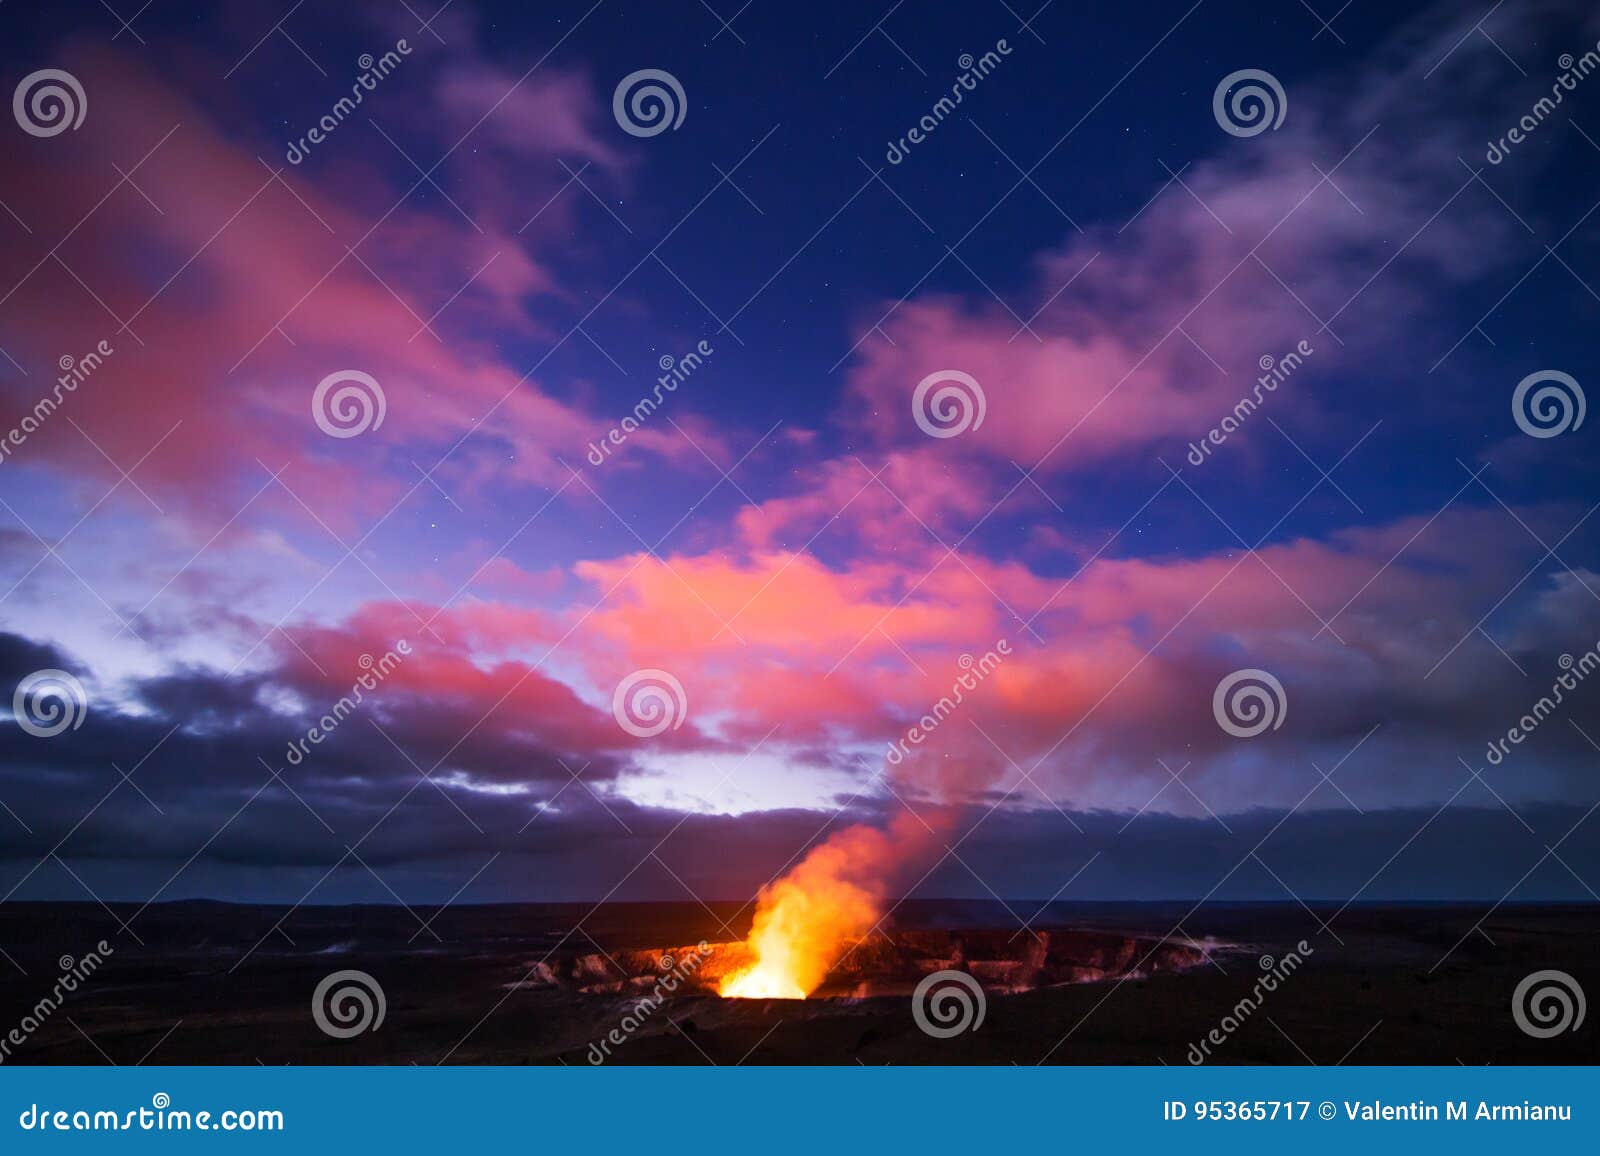 kilauea volcano